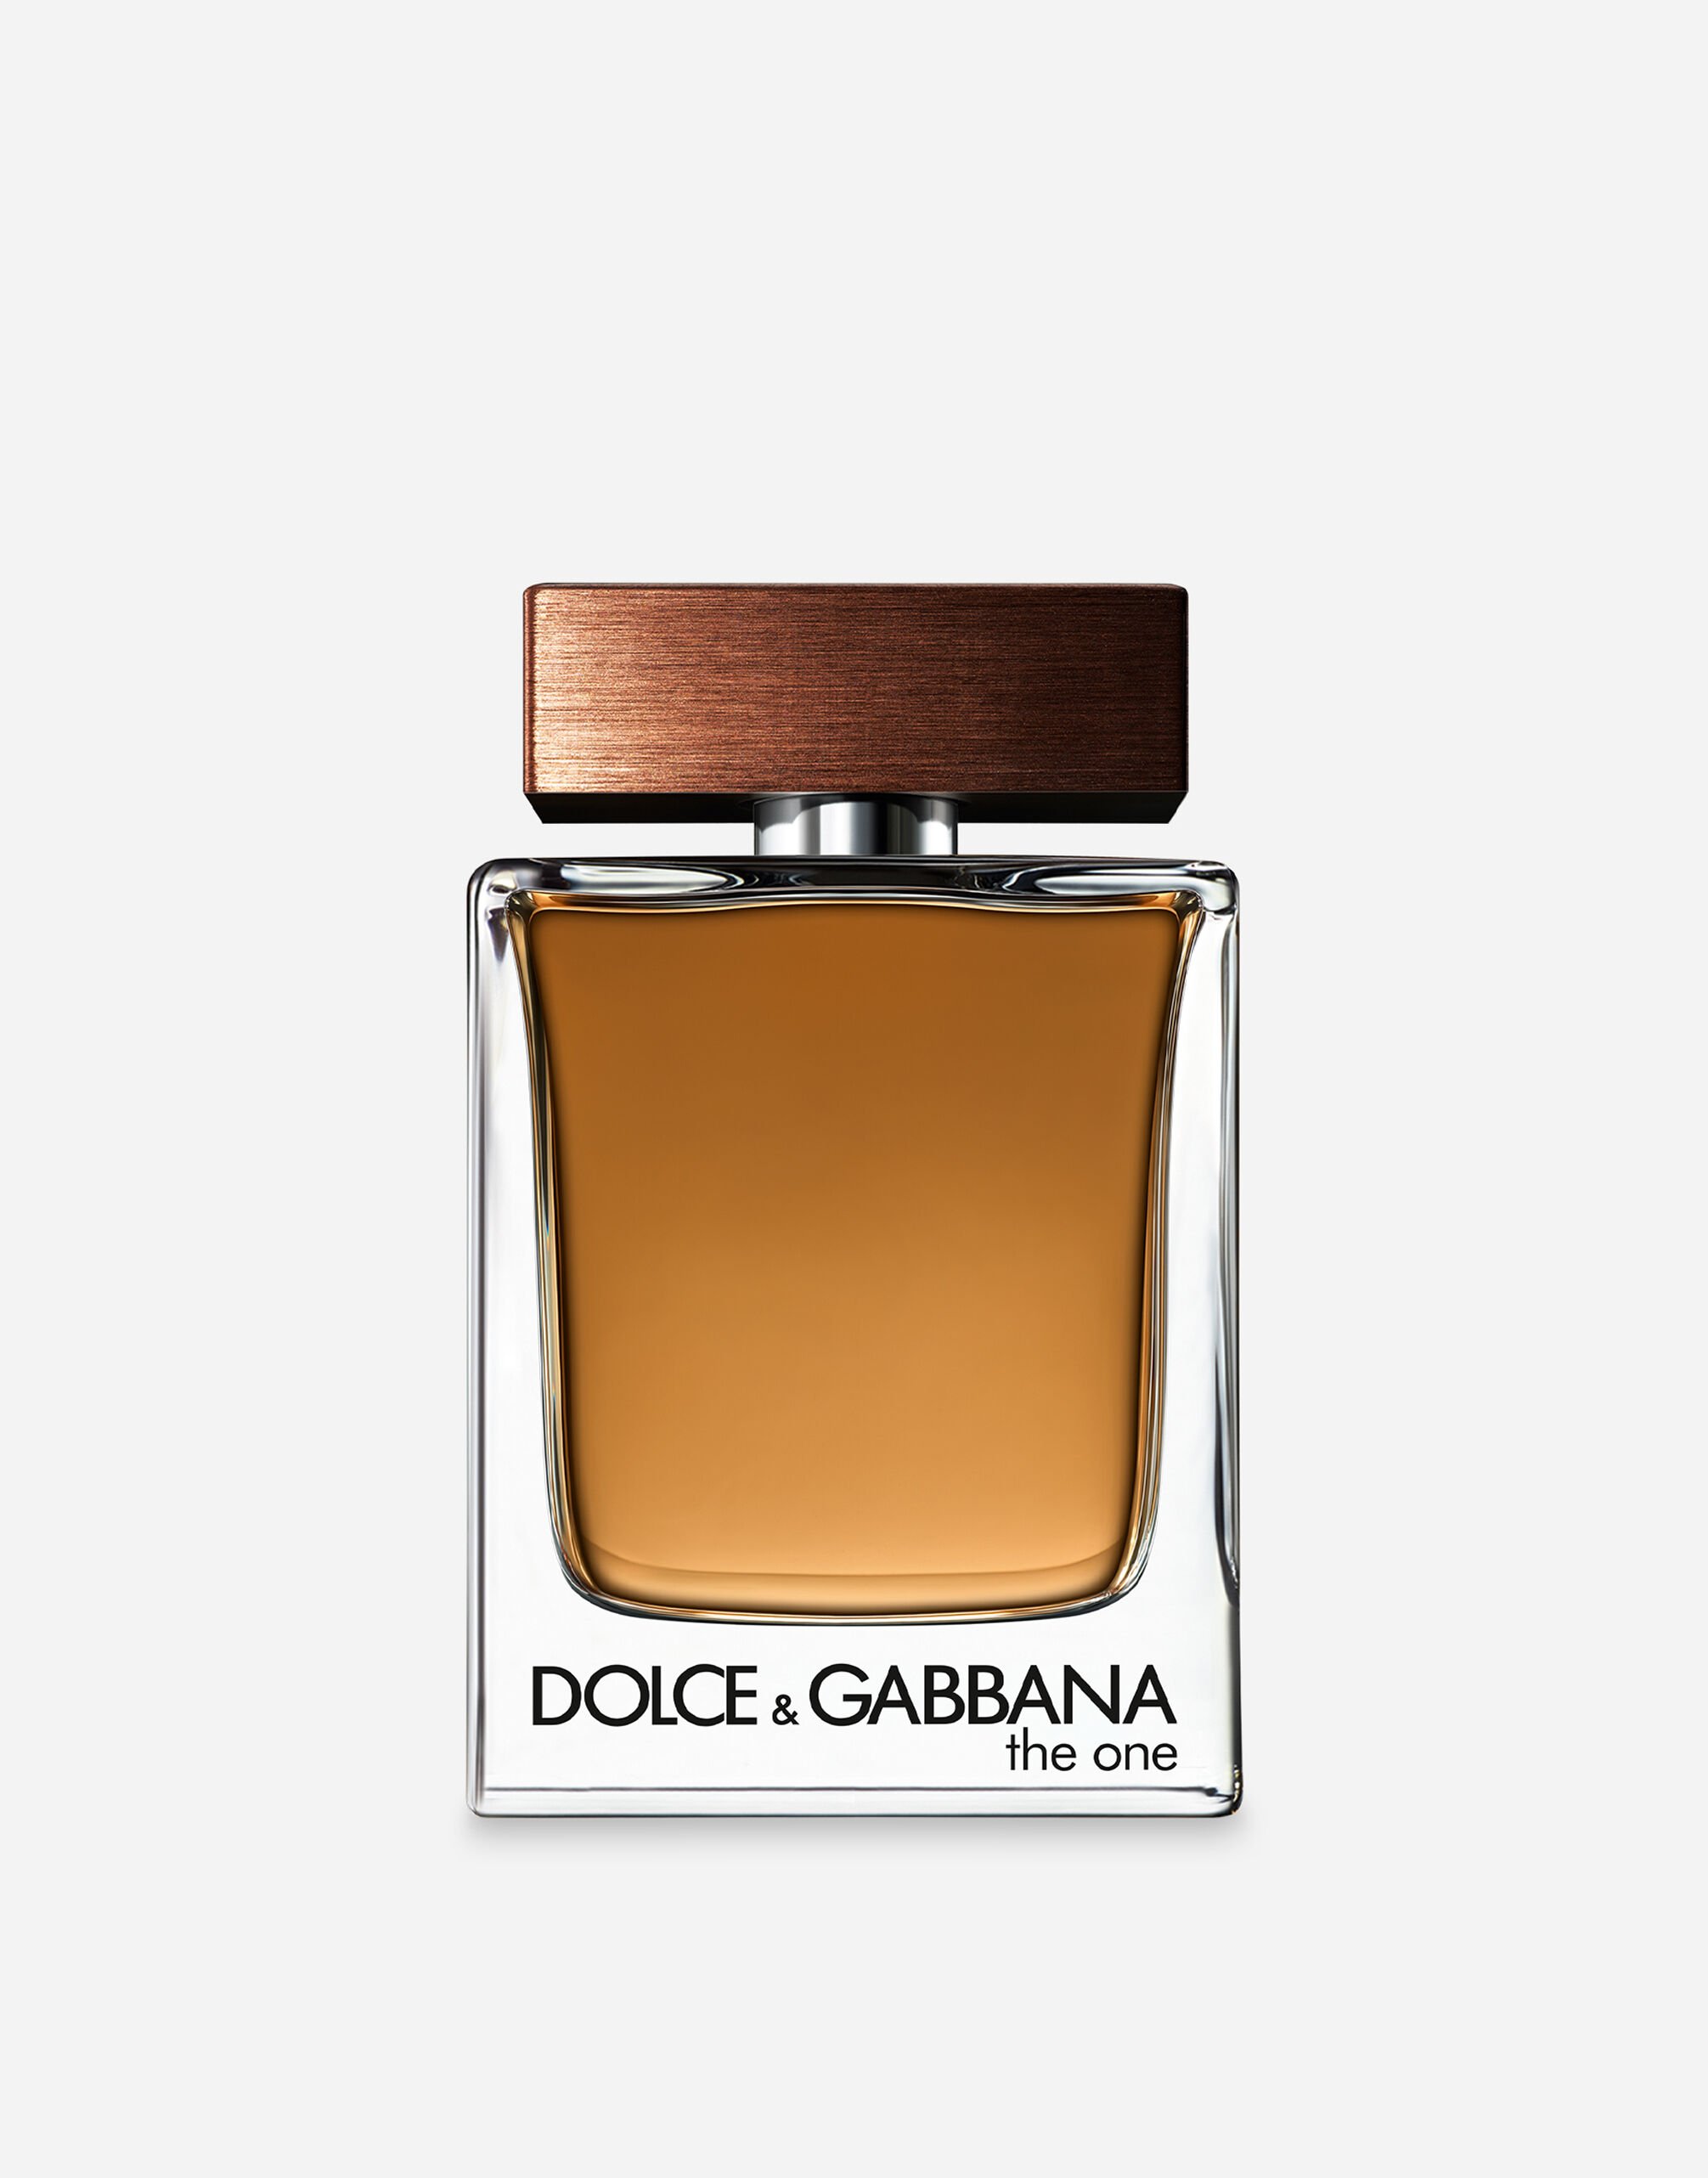 Dolce & Gabbana The One for Men Eau de Toilette - VT001KVT000